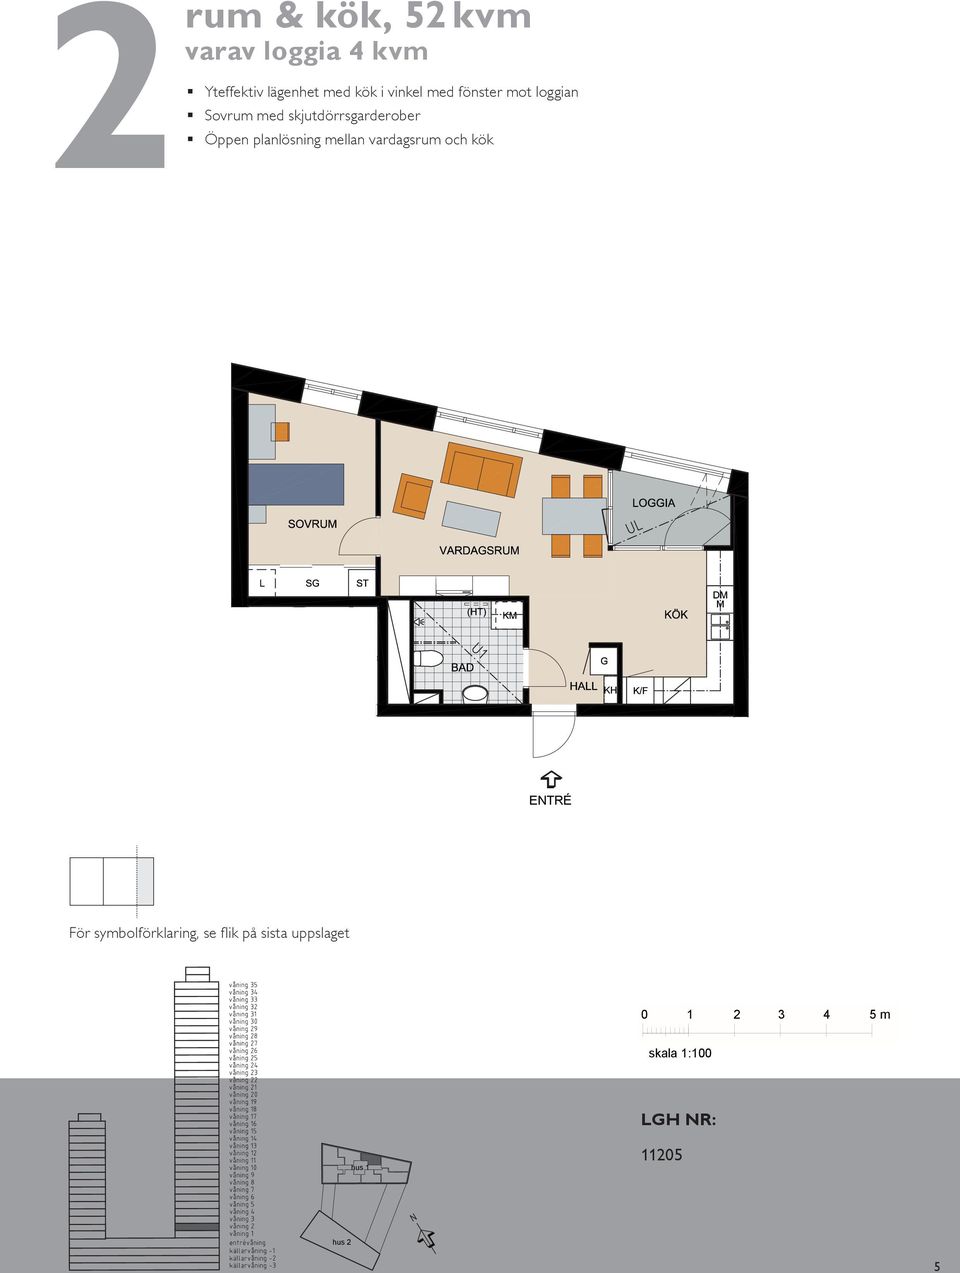 mot rum & kök, 5 m² varav loggia m² Yteffektiv lägenhet med kök i vinkel med fönster mot loggian Sovrum med skjutdörrsgarderober Öppen planlösning mellan vardagsrum och